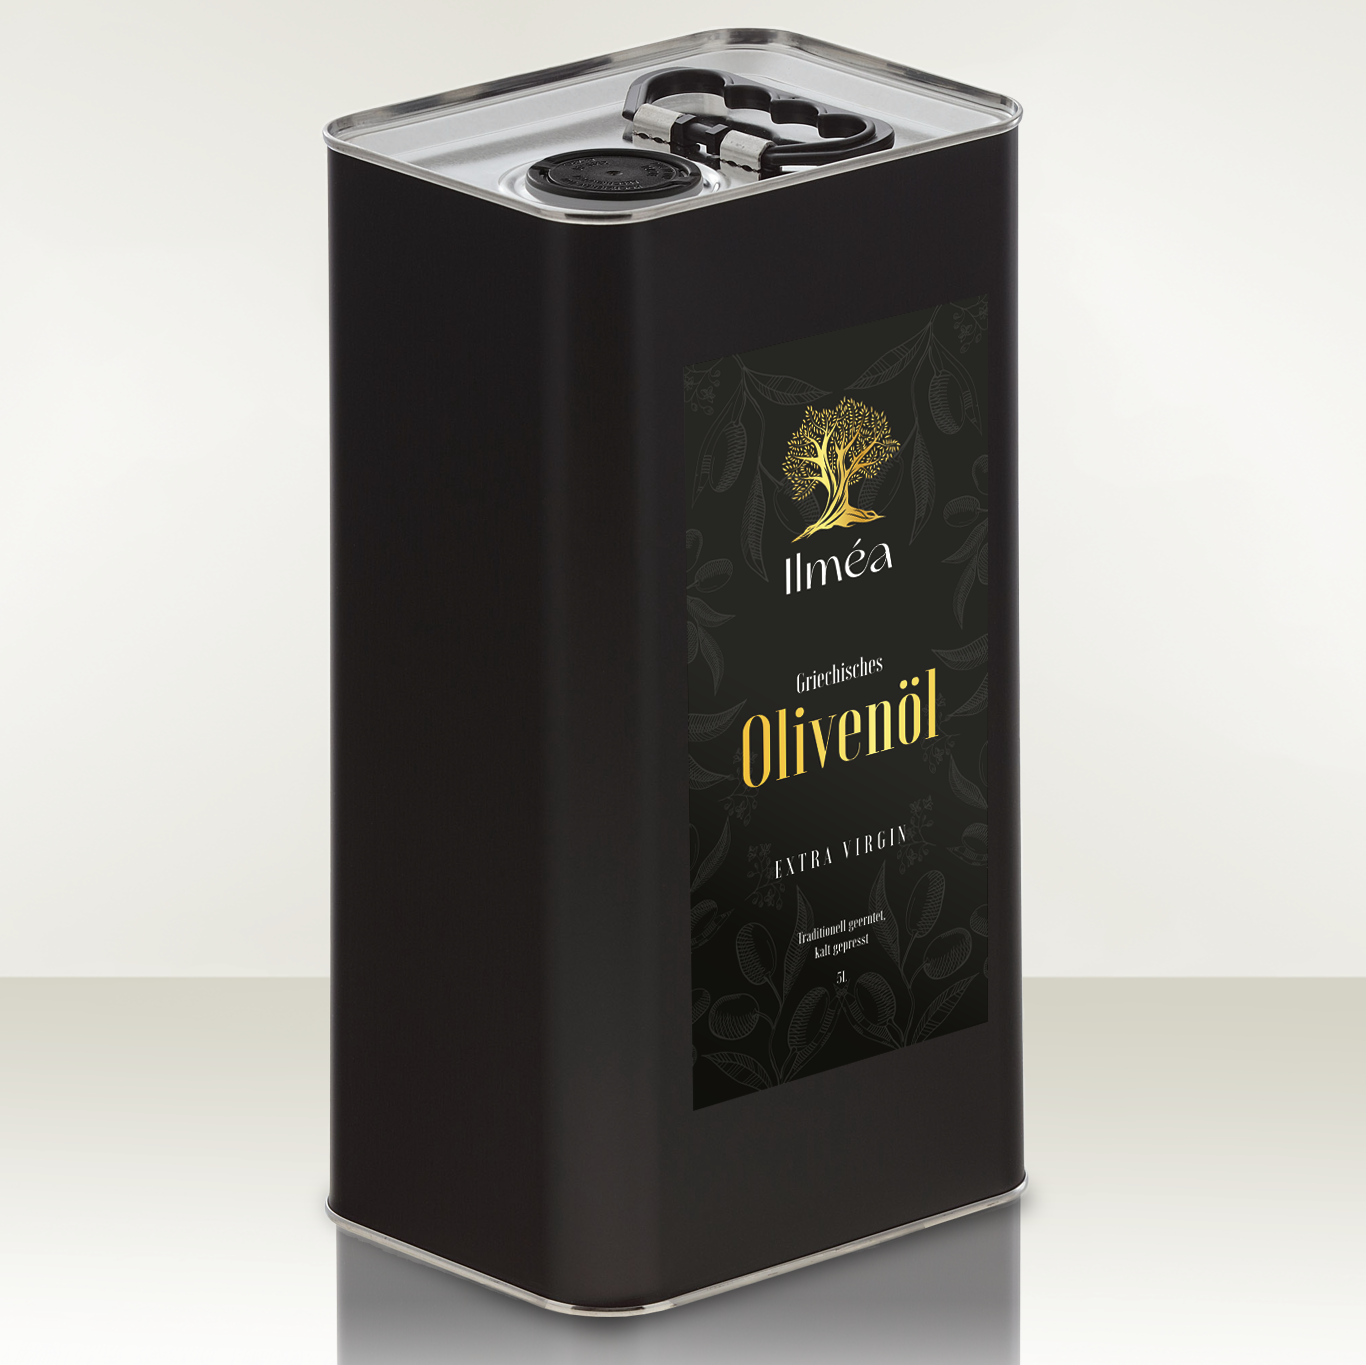 Olivenöl 5L Extra Nativ aus Griechenland von Ilmea Olivenöl.